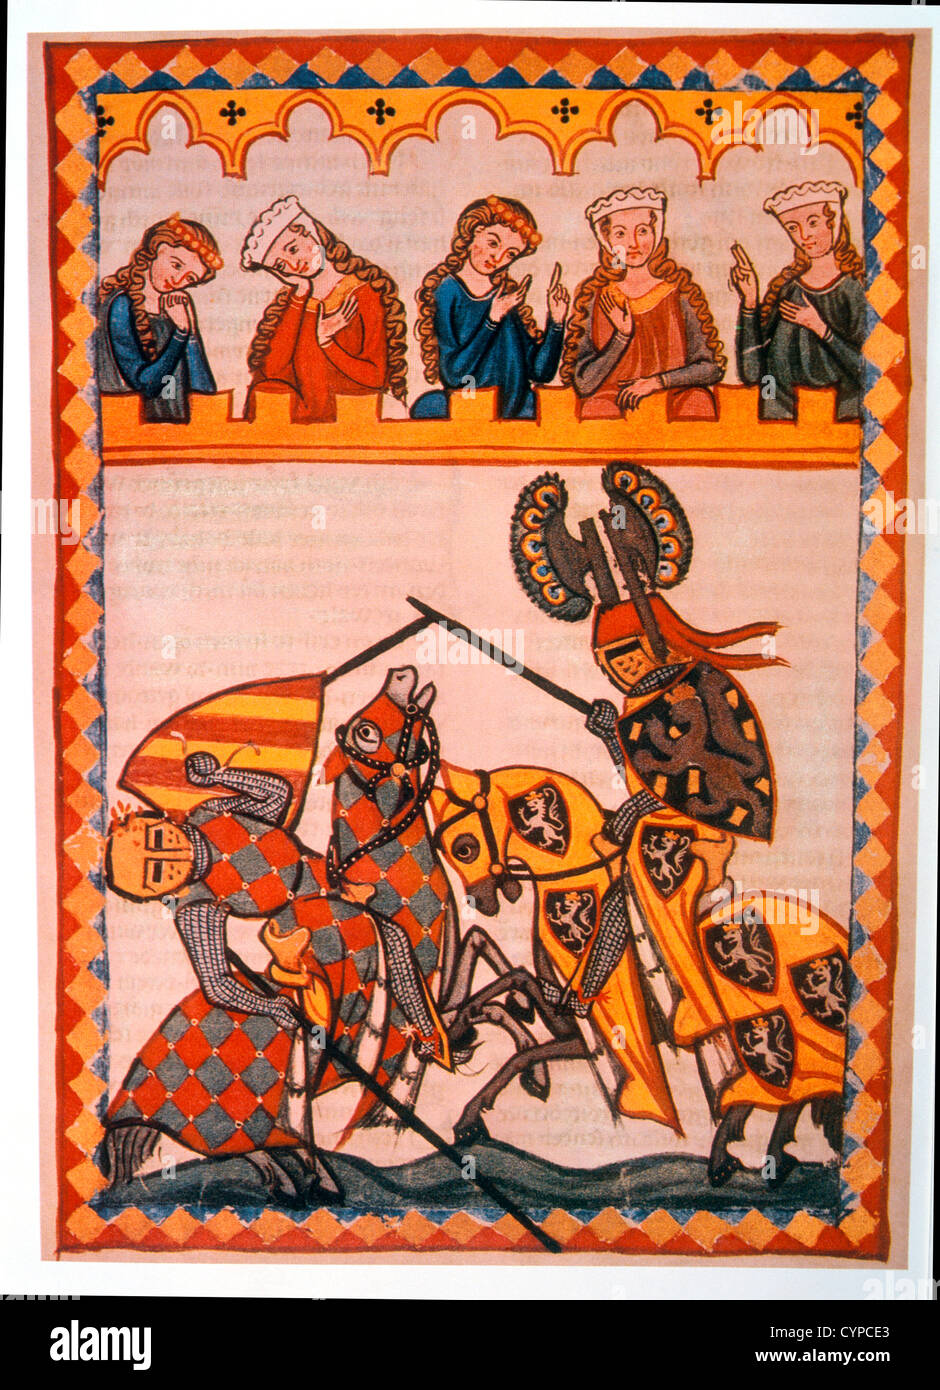 Walter von Klingen besiegt seinen Gegner in einem Turnier, Illustration von flämischen Gebetbuch, 14. Jahrhundert Stockfoto